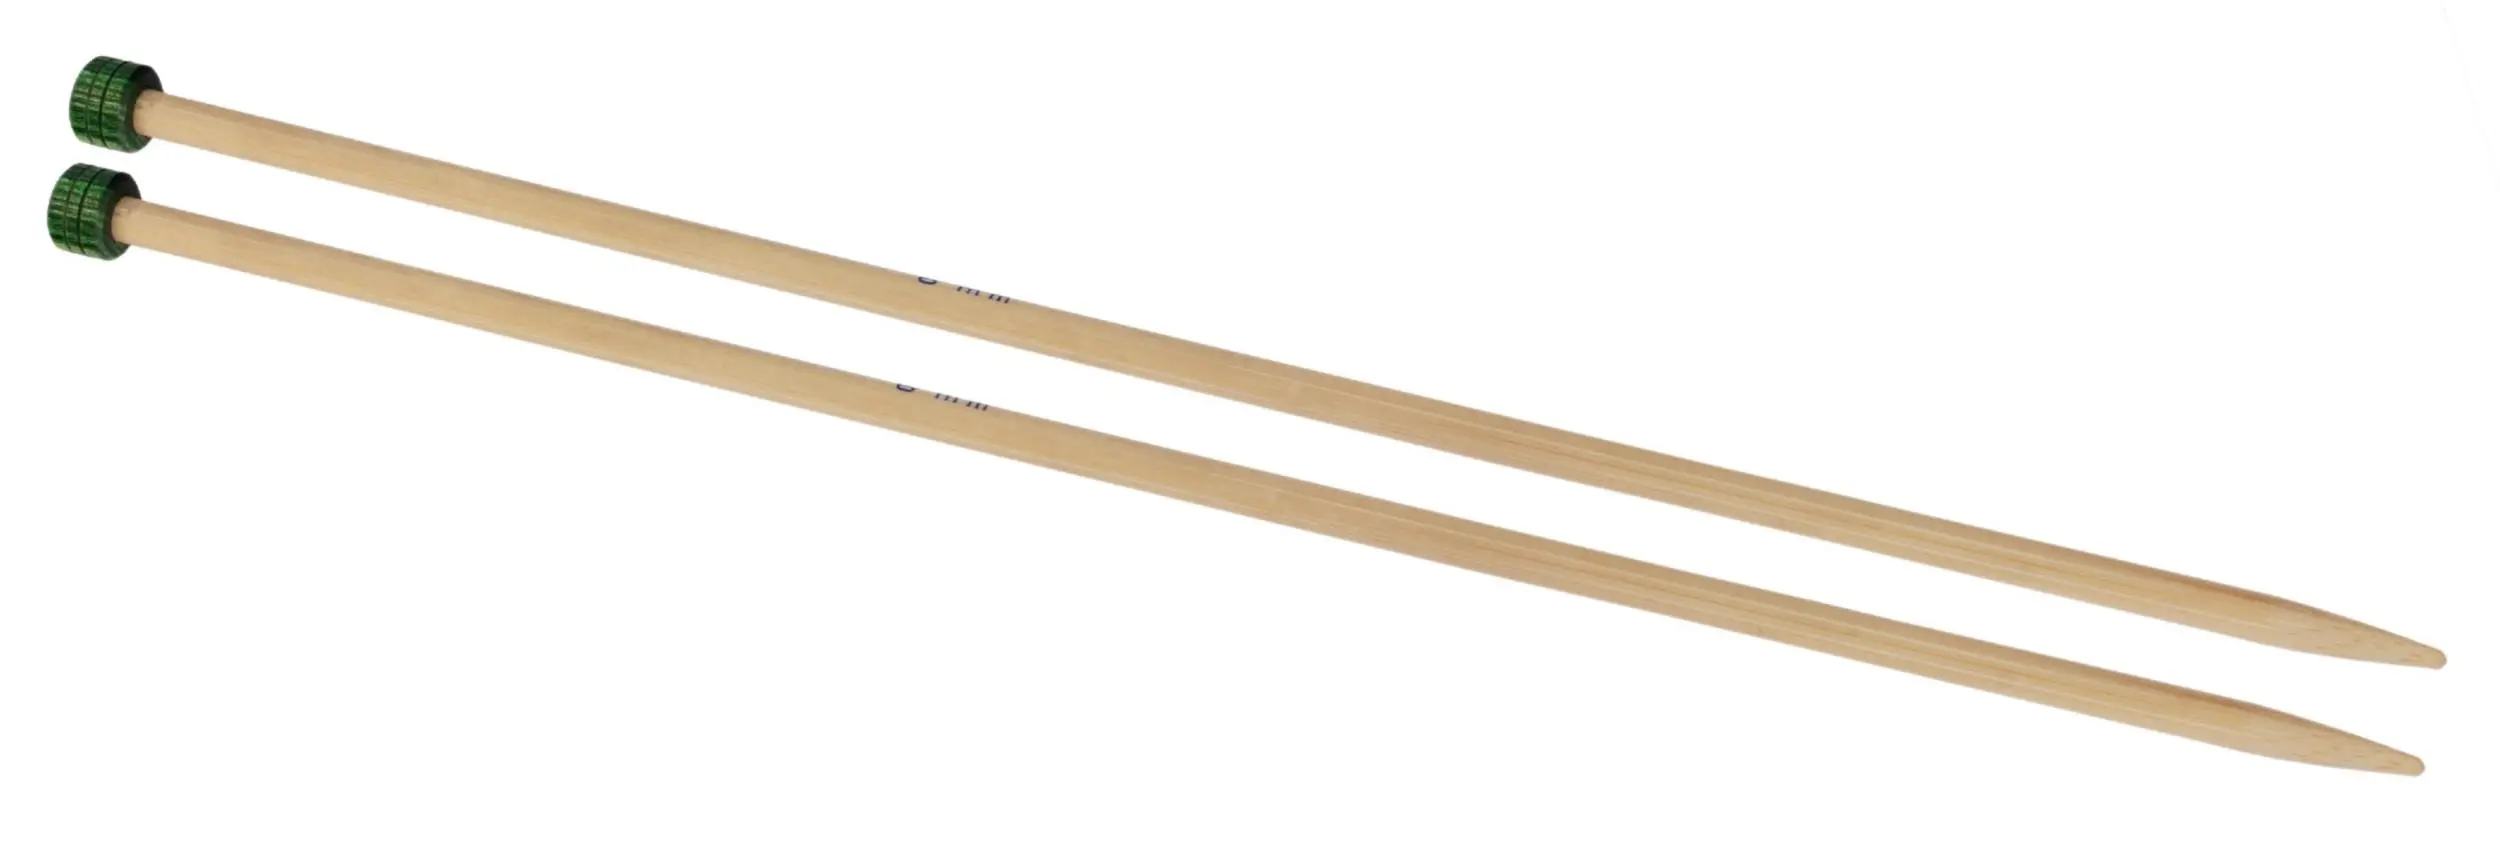 22318 Спиці прямі Bamboo KnitPro, 25 см, 3.75 мм